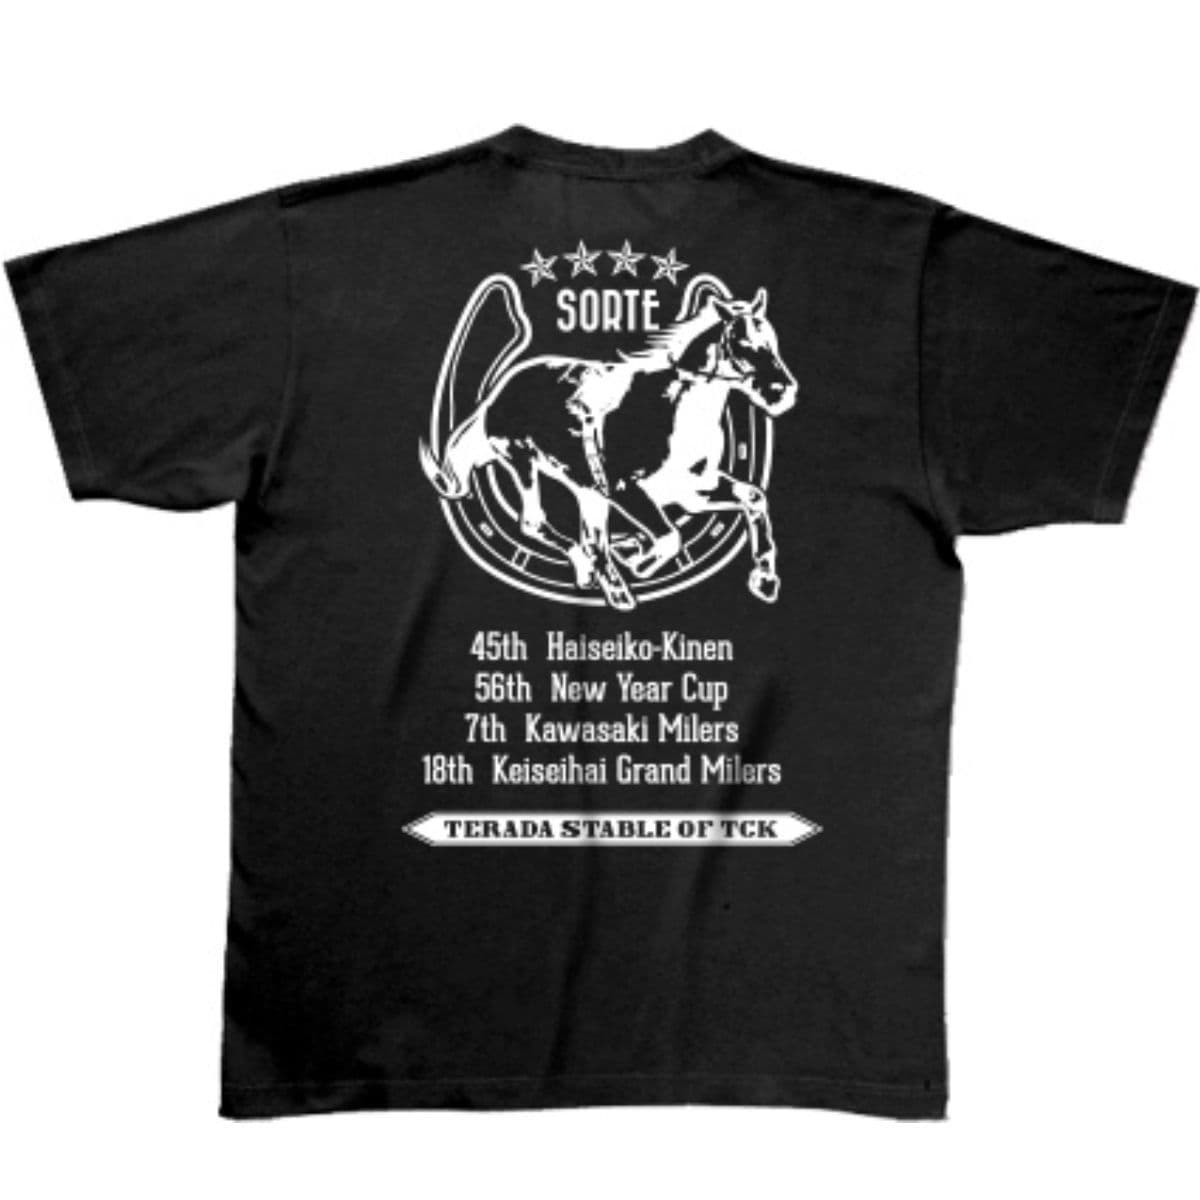 馬のイラストのTシャツデザイン